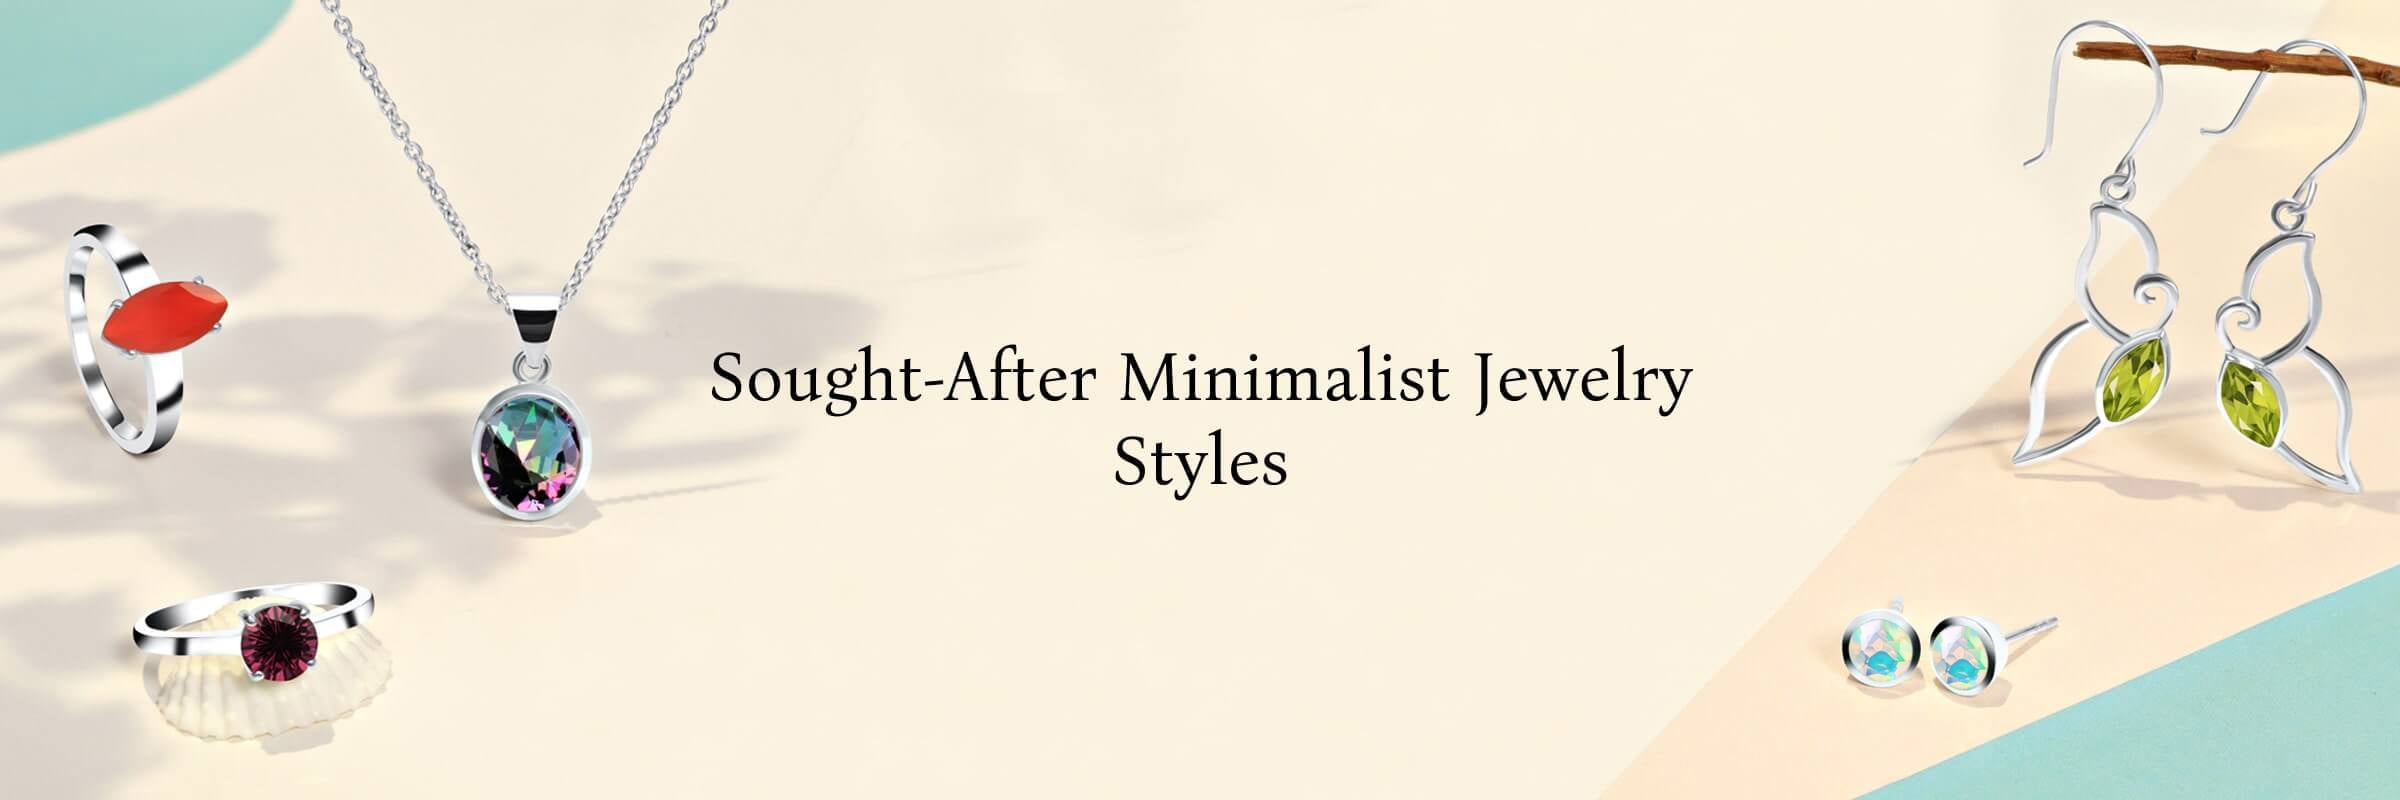 Popular Styles of Minimalist Jewelry